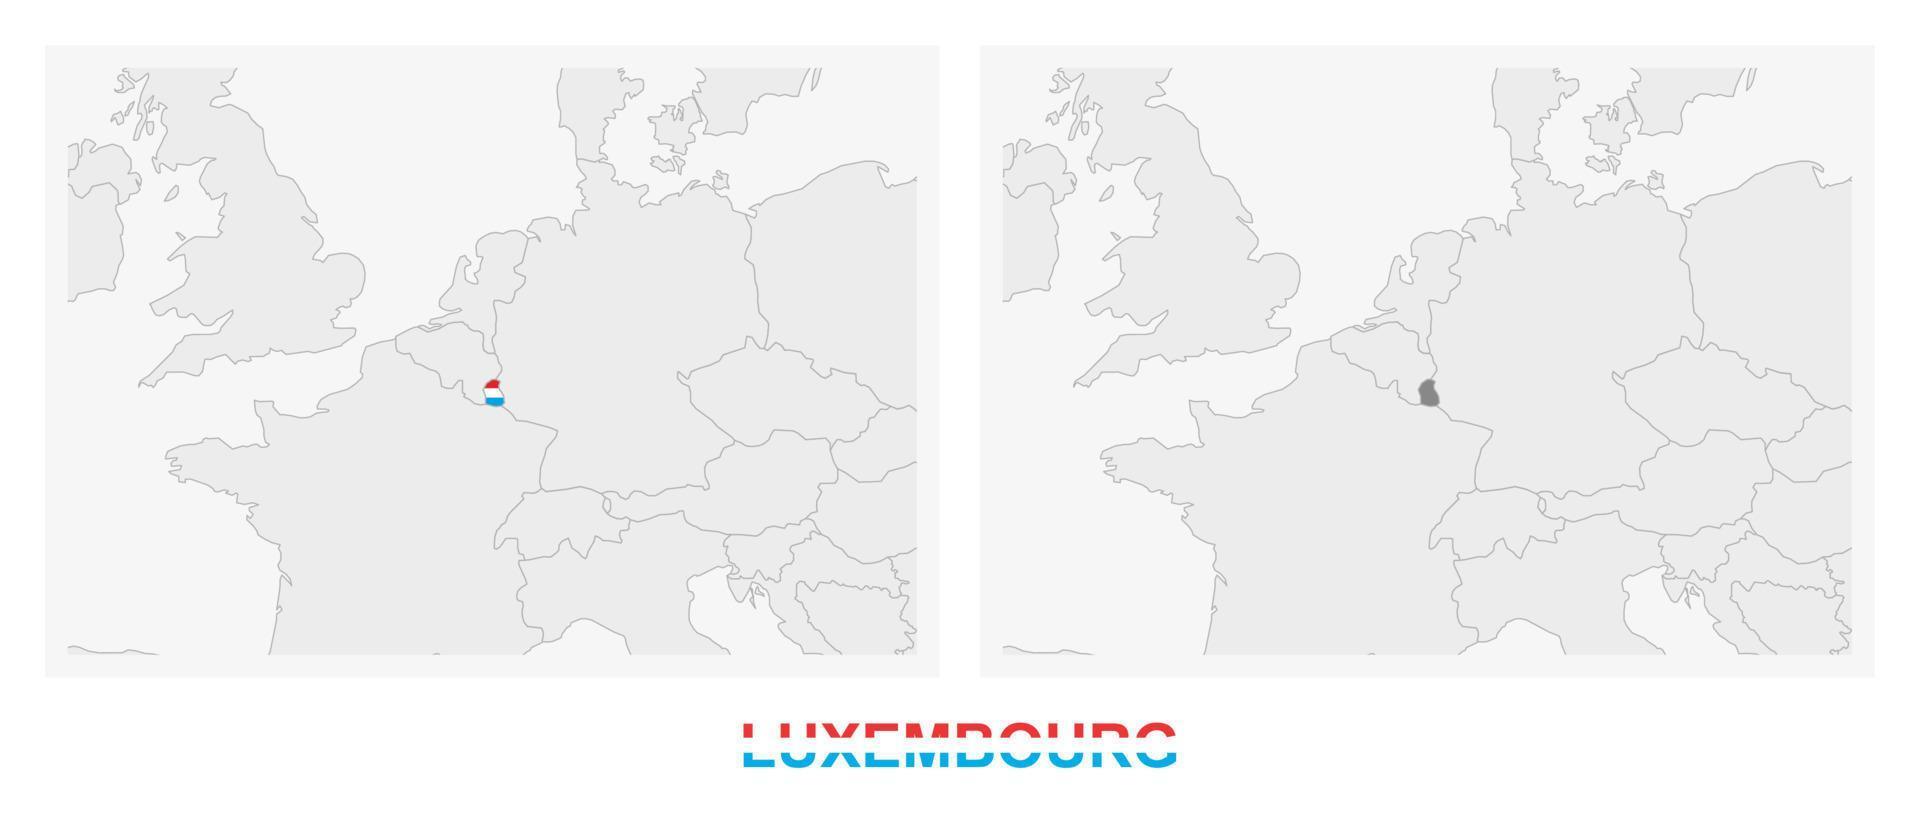 dos versiones del mapa de luxemburgo, con la bandera de luxemburgo y resaltada en gris oscuro. vector